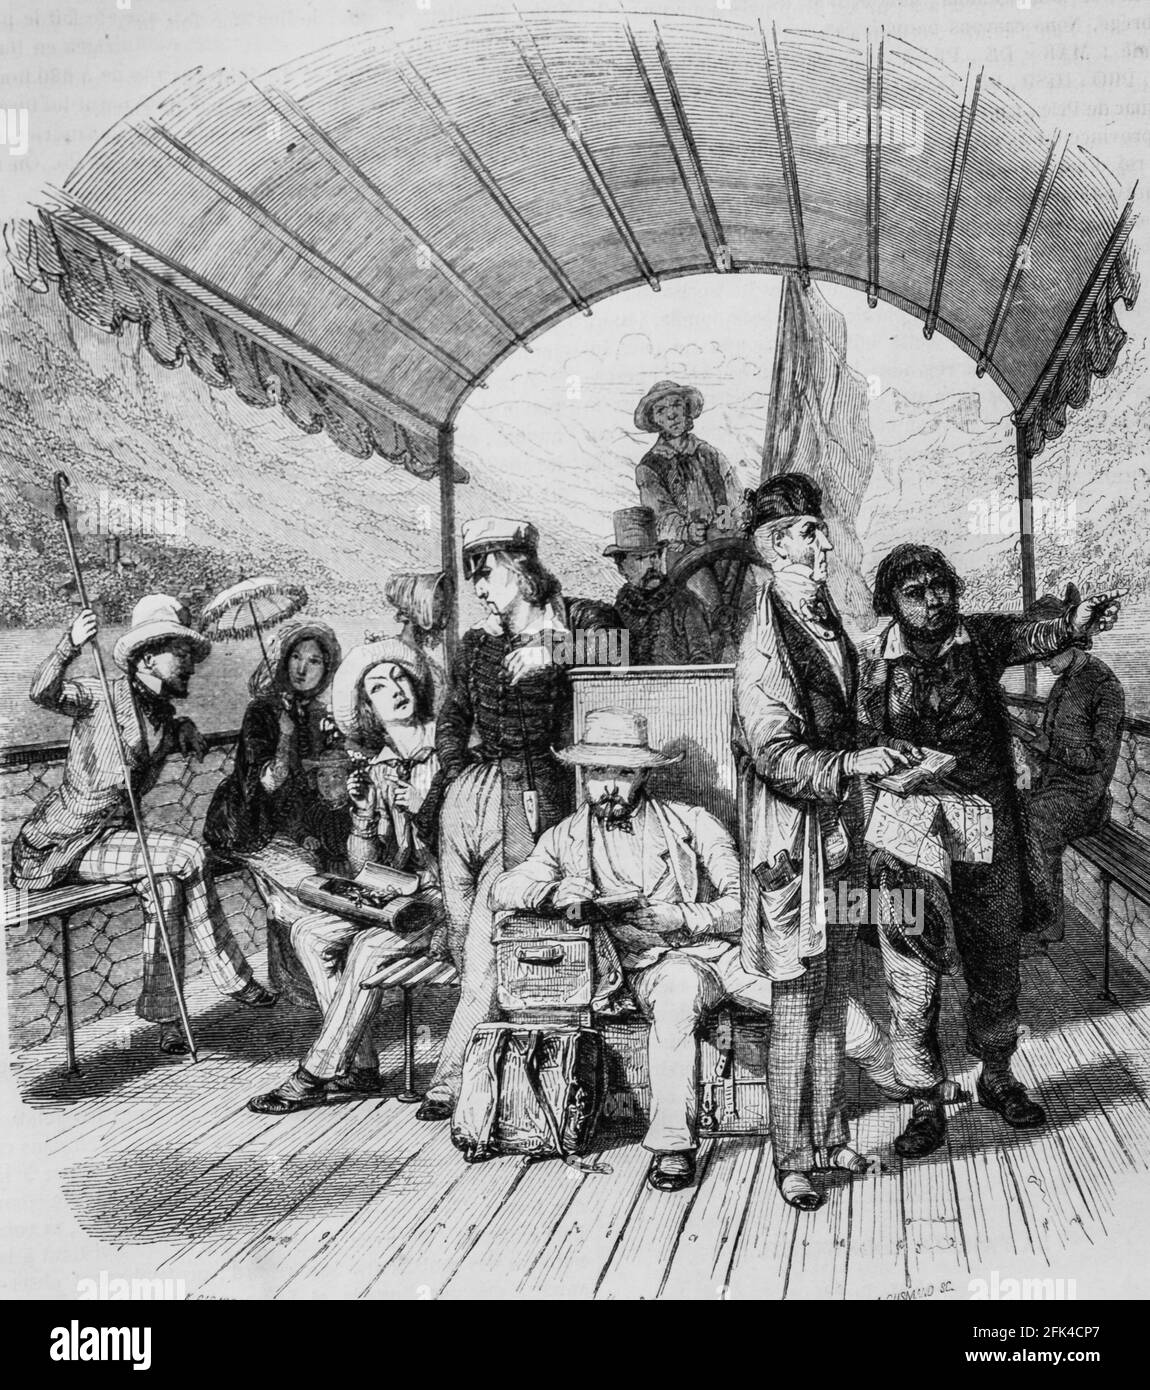 pont d'un bateau a vapeur, le magazin pittoresque, editeur edouard charton, 1860 Foto Stock